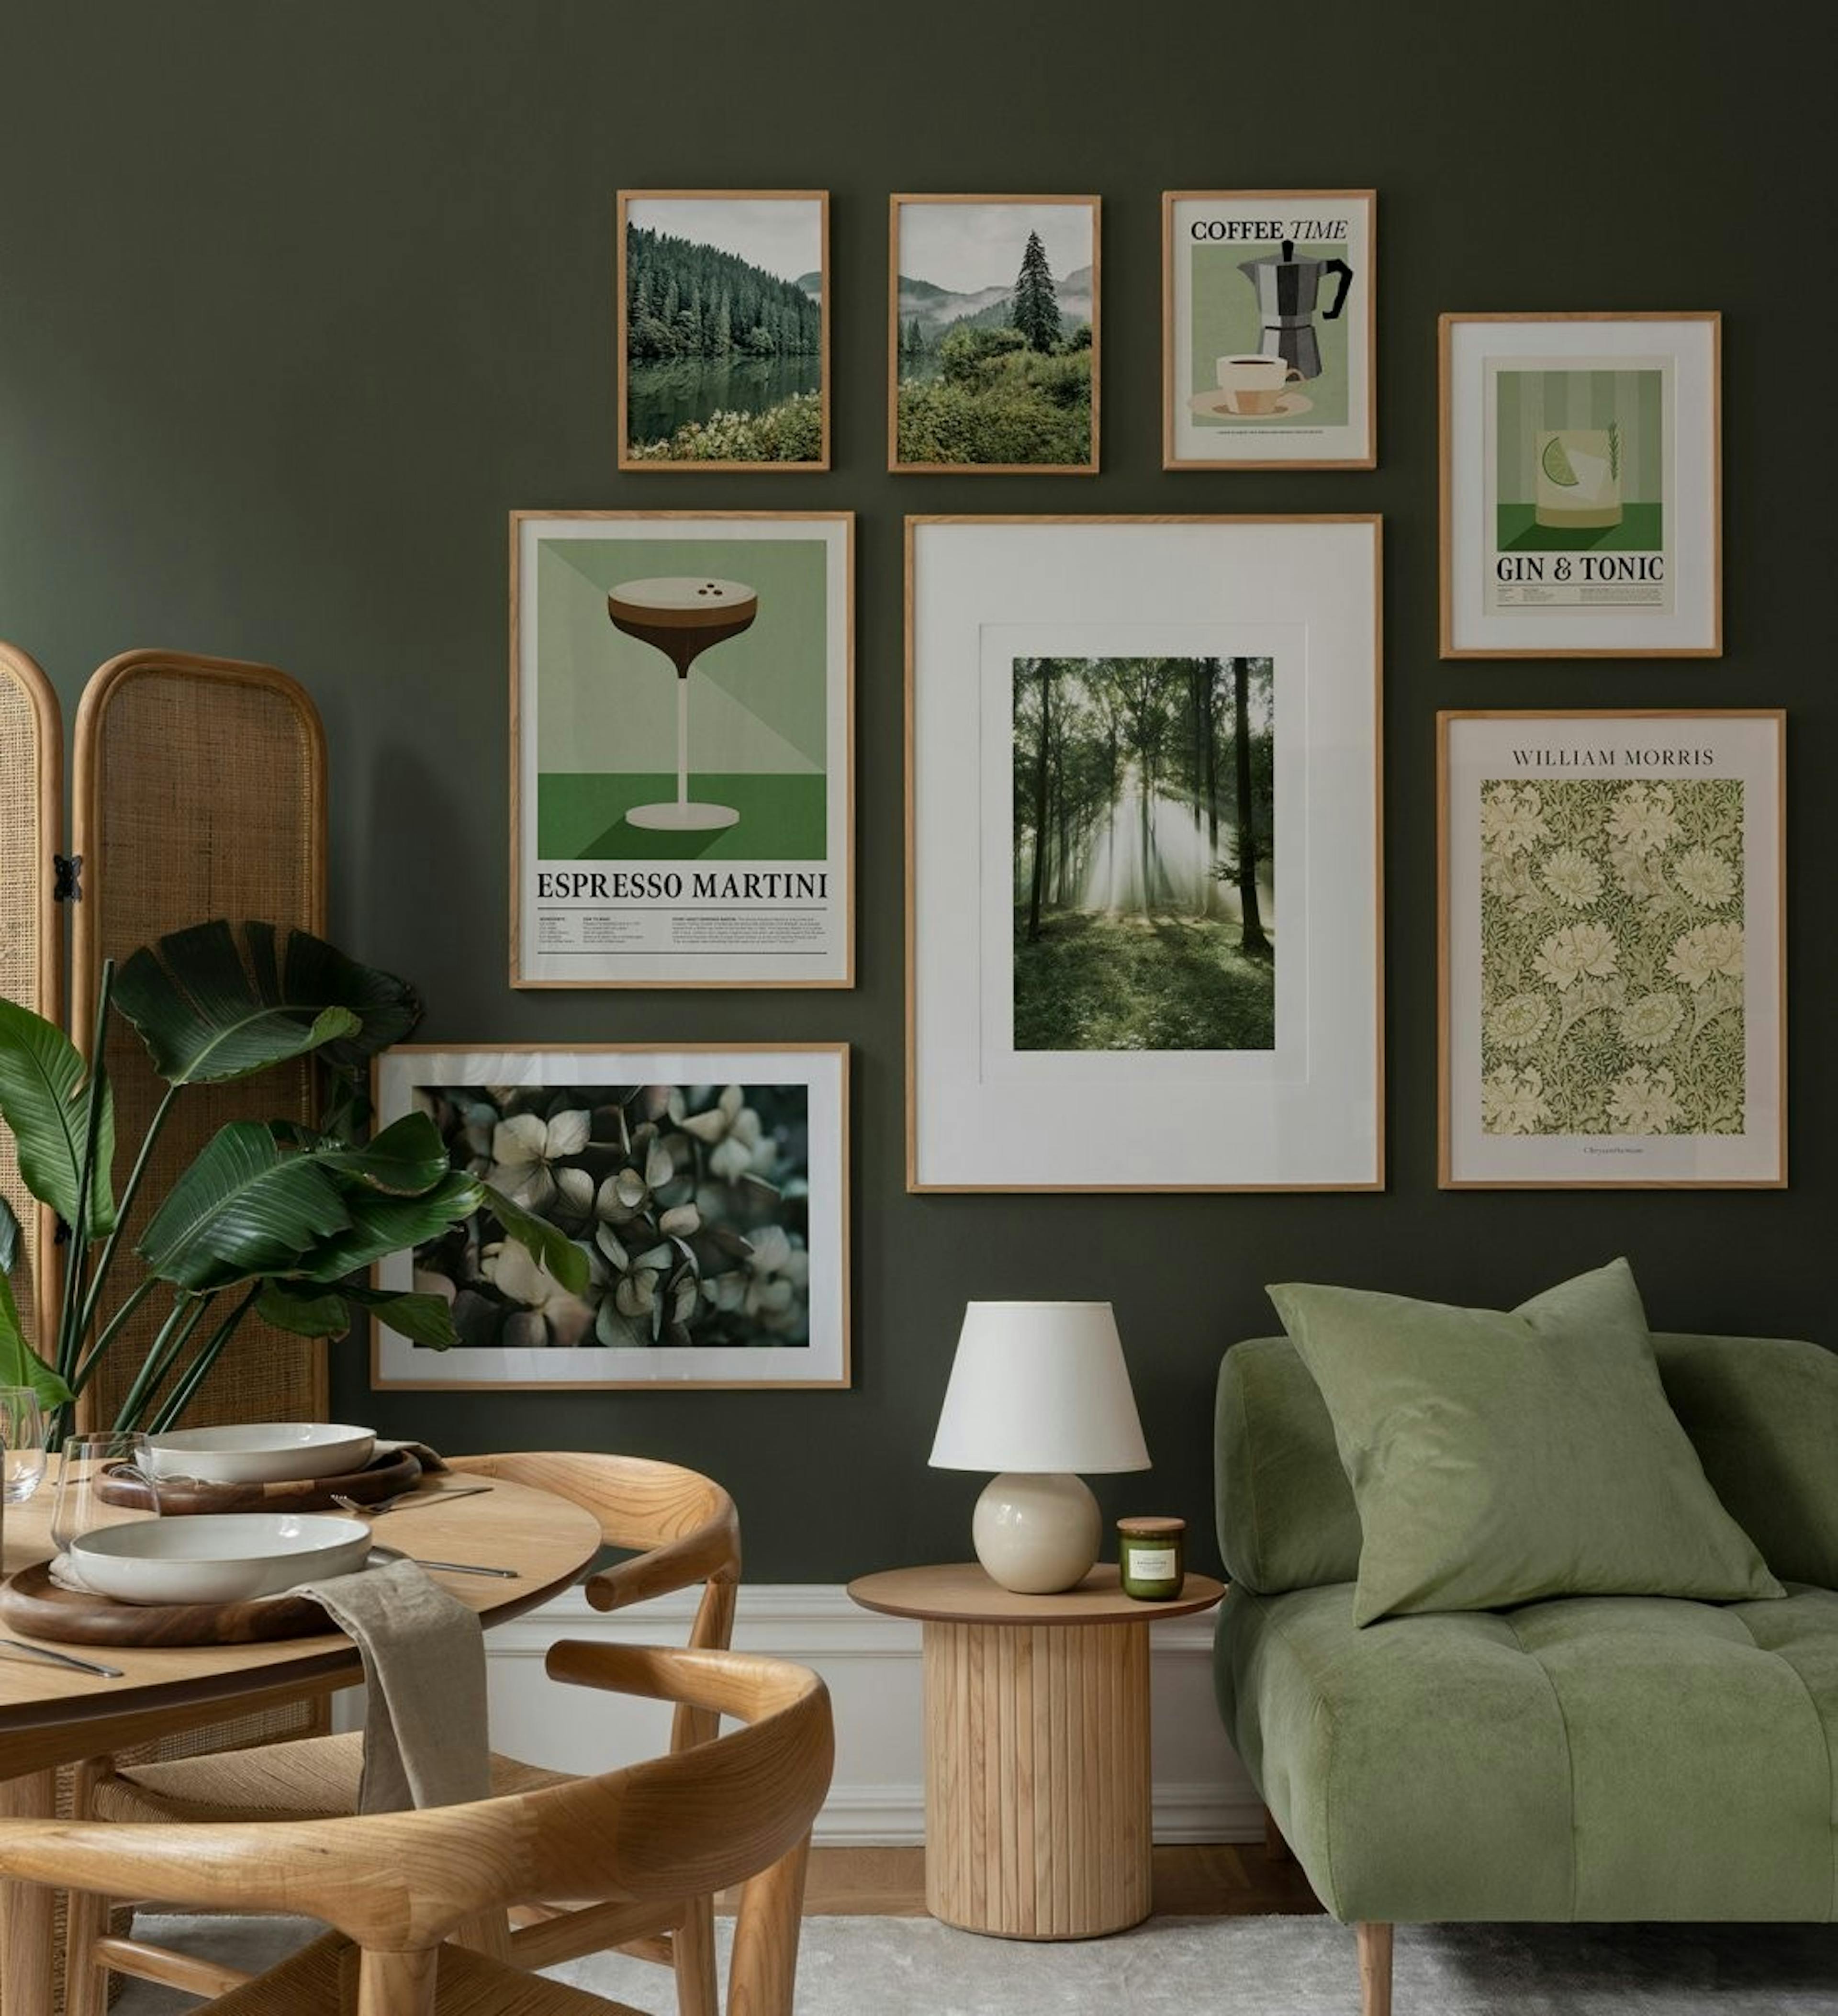 جدار لوح خشبي بألوان خضراء وبيج مع مزيج حديث من الطبيعة والزهور والمطبوعات القديمة مع إطارات من خشب البلوط لغرفة المعيشة